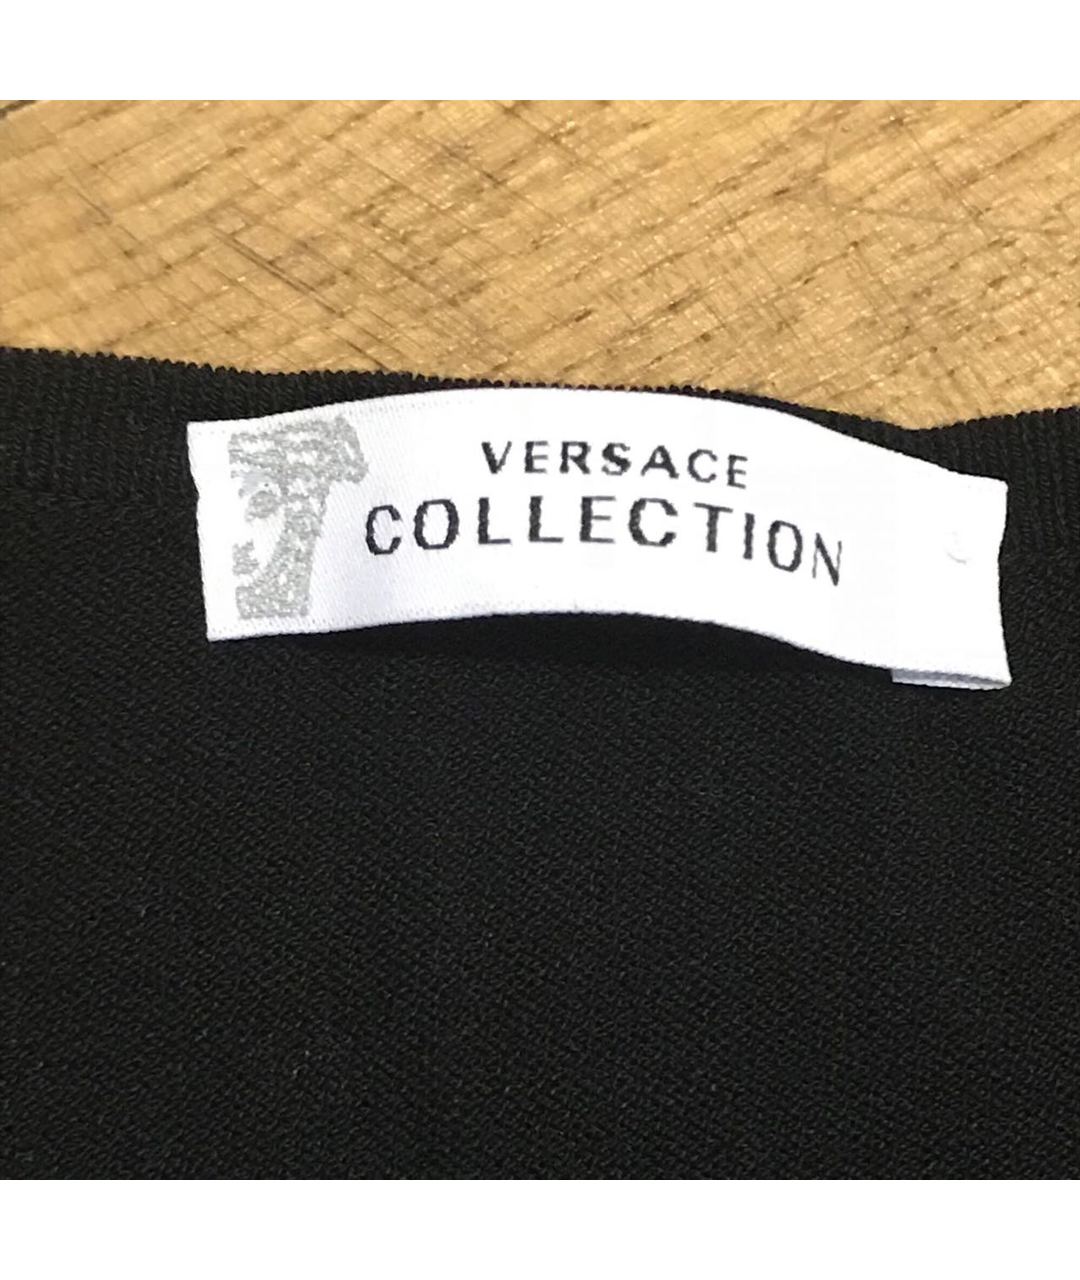 VERSACE COLLECTION Черный вискозный джемпер / свитер, фото 2